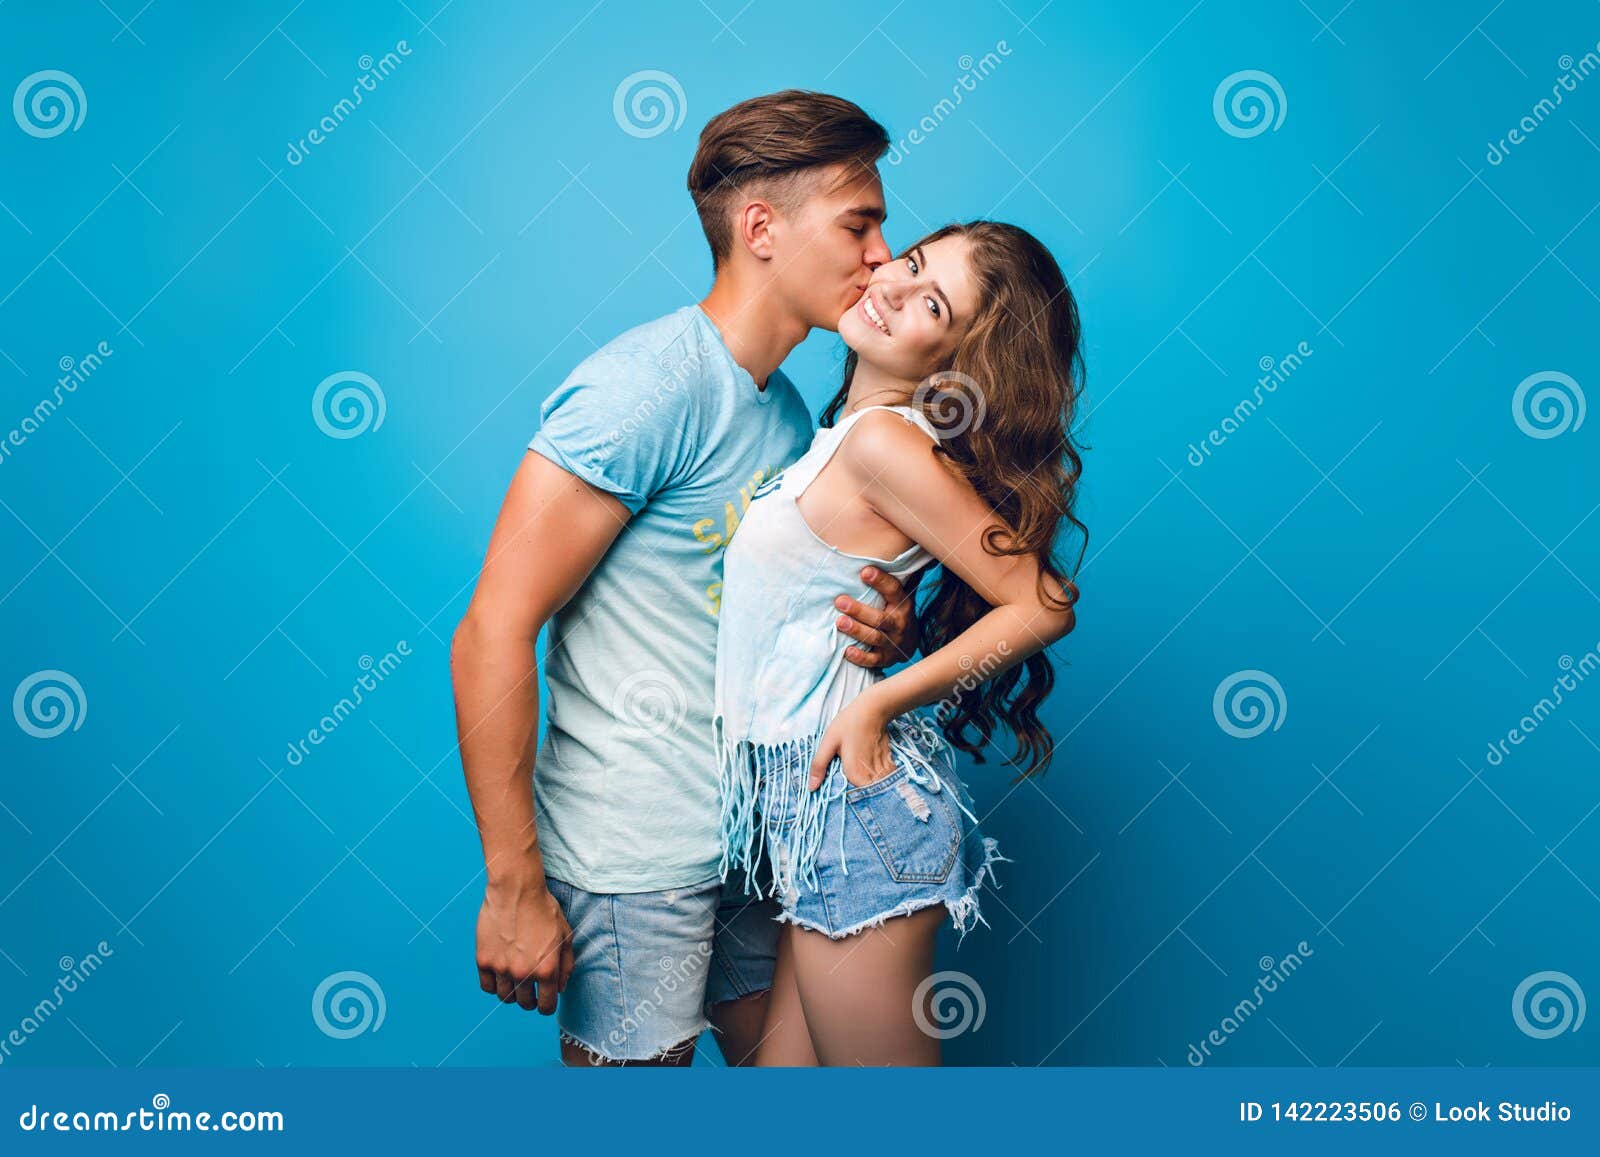 Фото парень держит девушку над головой